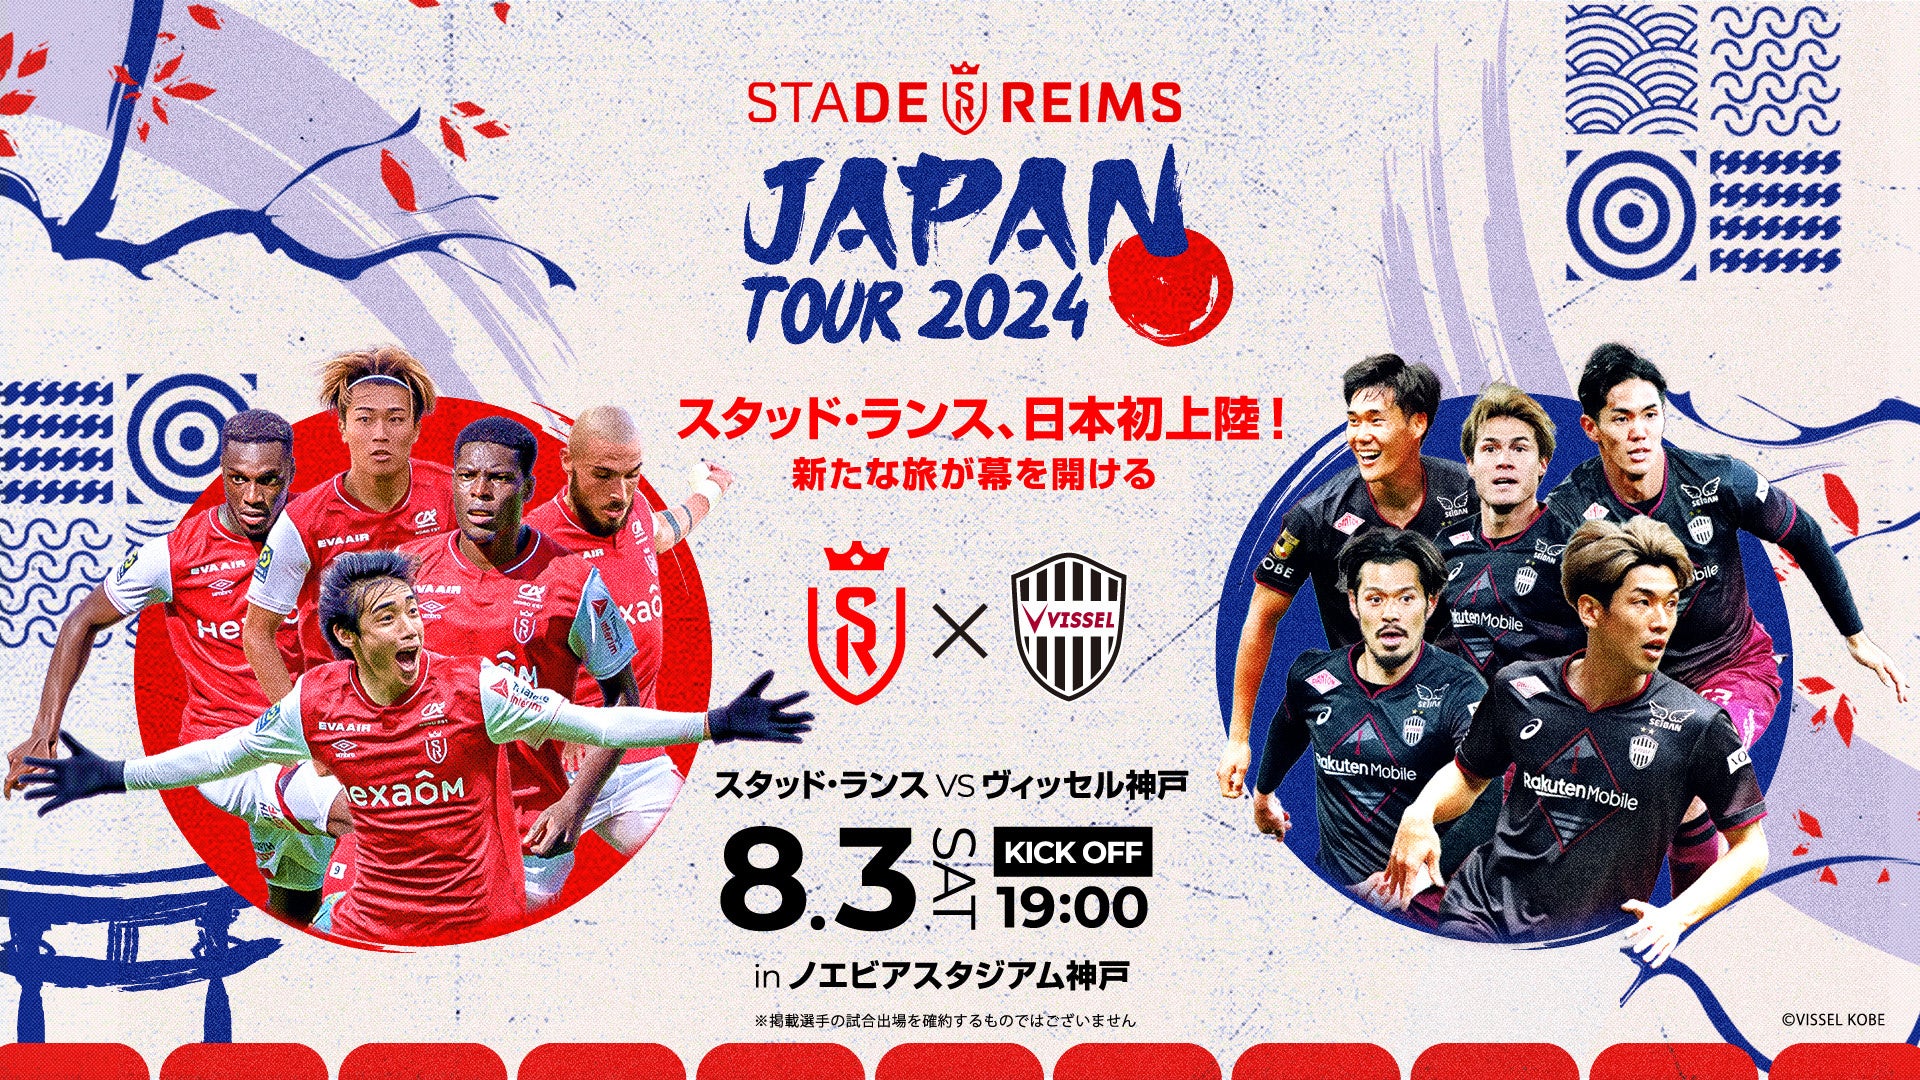 「スタッド・ランス JAPAN TOUR 2024」開催決定！8月3日(土)に昨季J1王者ヴィッセル神戸と対戦